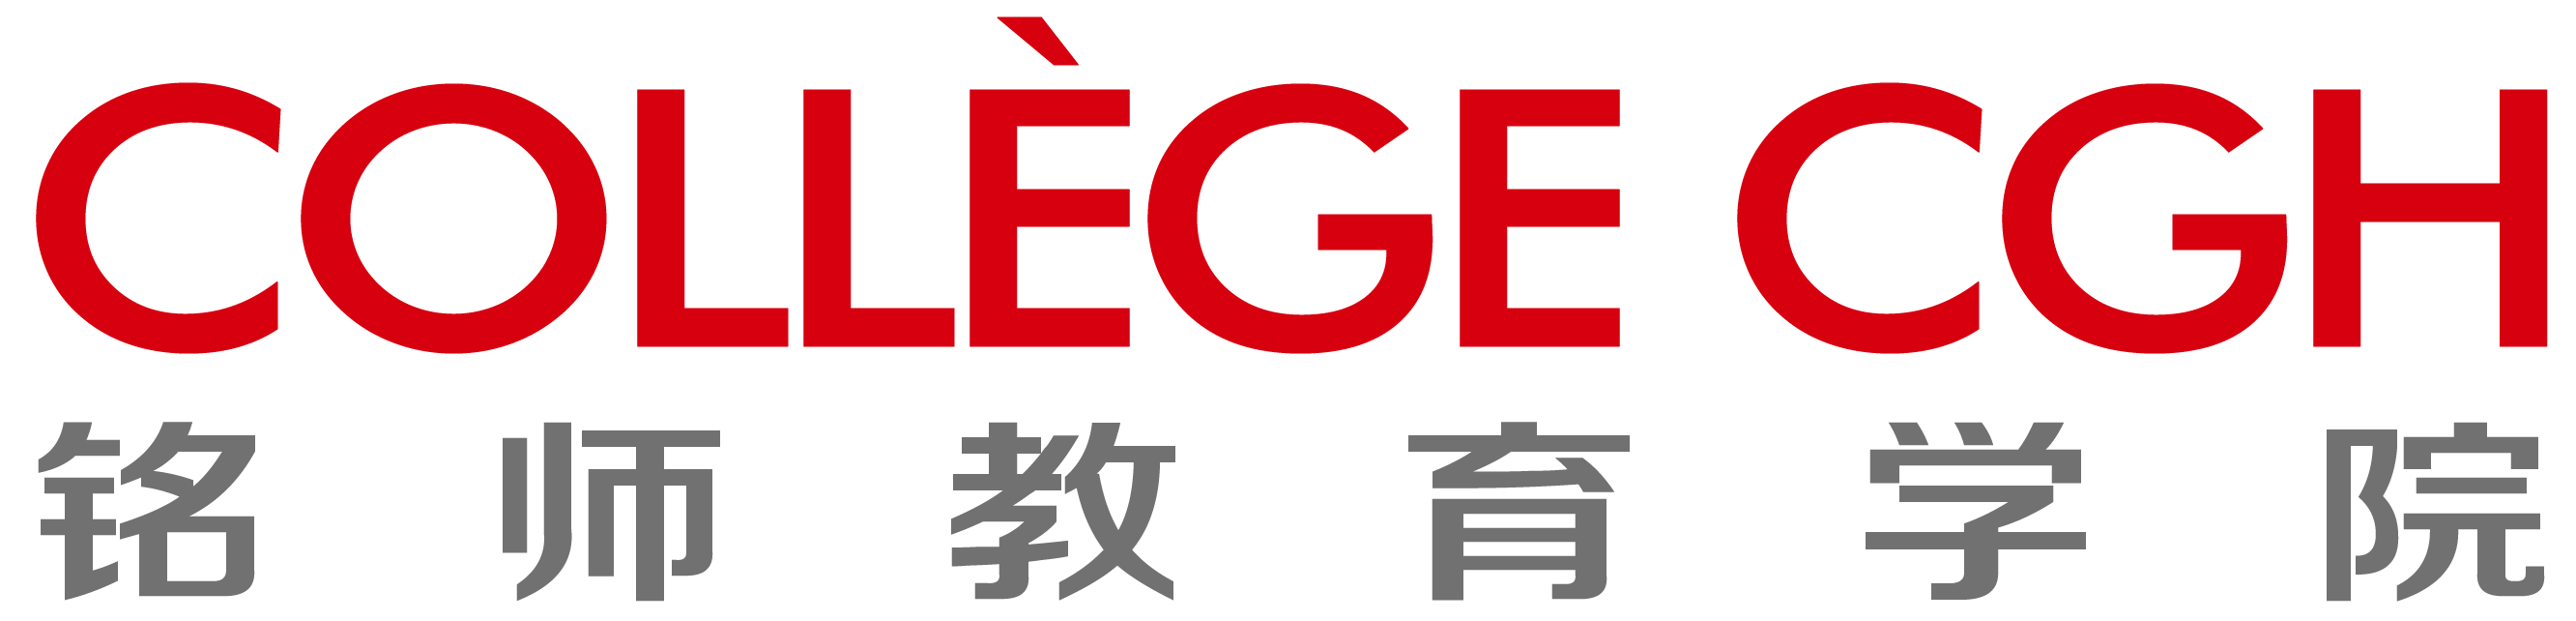 铭师教育学院logo.png